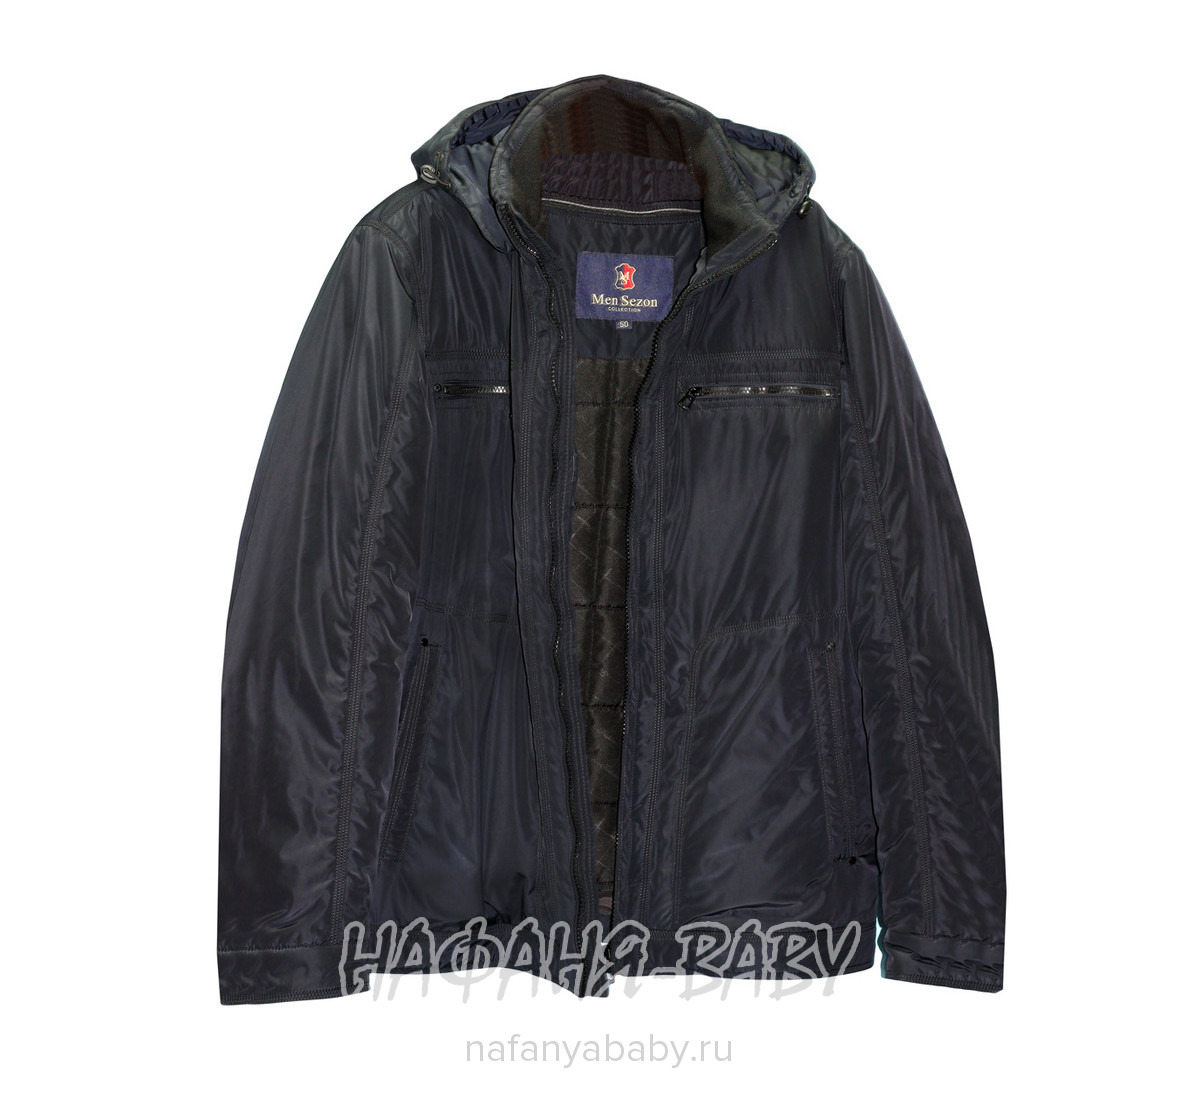 Куртка демисезонная MEN SEZON, купить в интернет магазине Нафаня. арт: 11901.